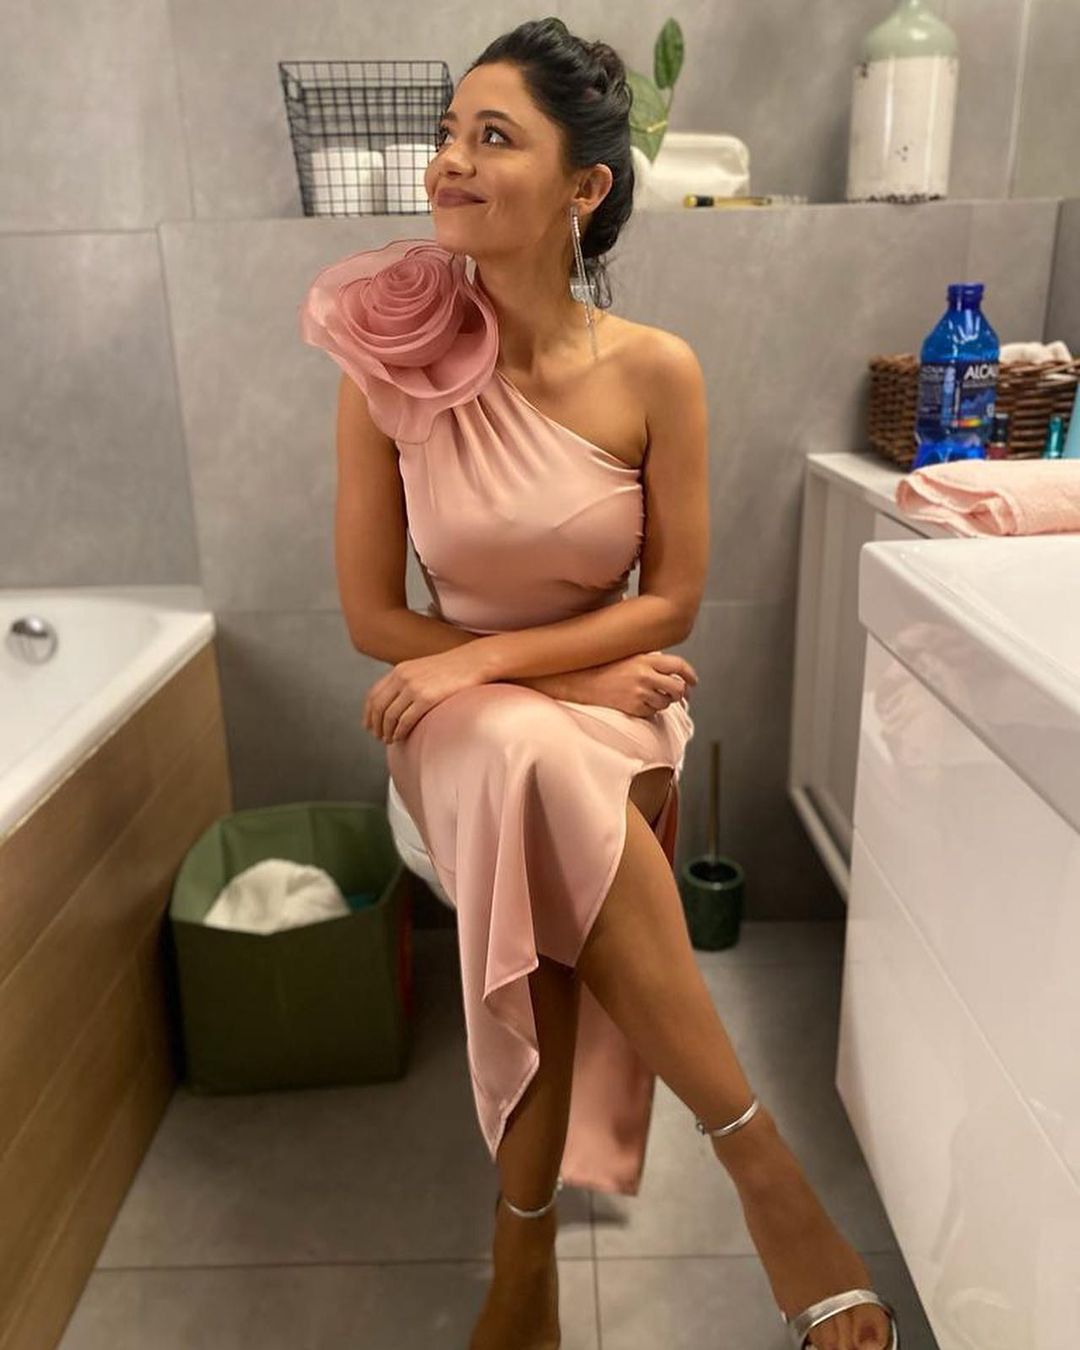 Adriana Kalska w eleganckiej stylizacji za kulisami serialu "M jak miłość"